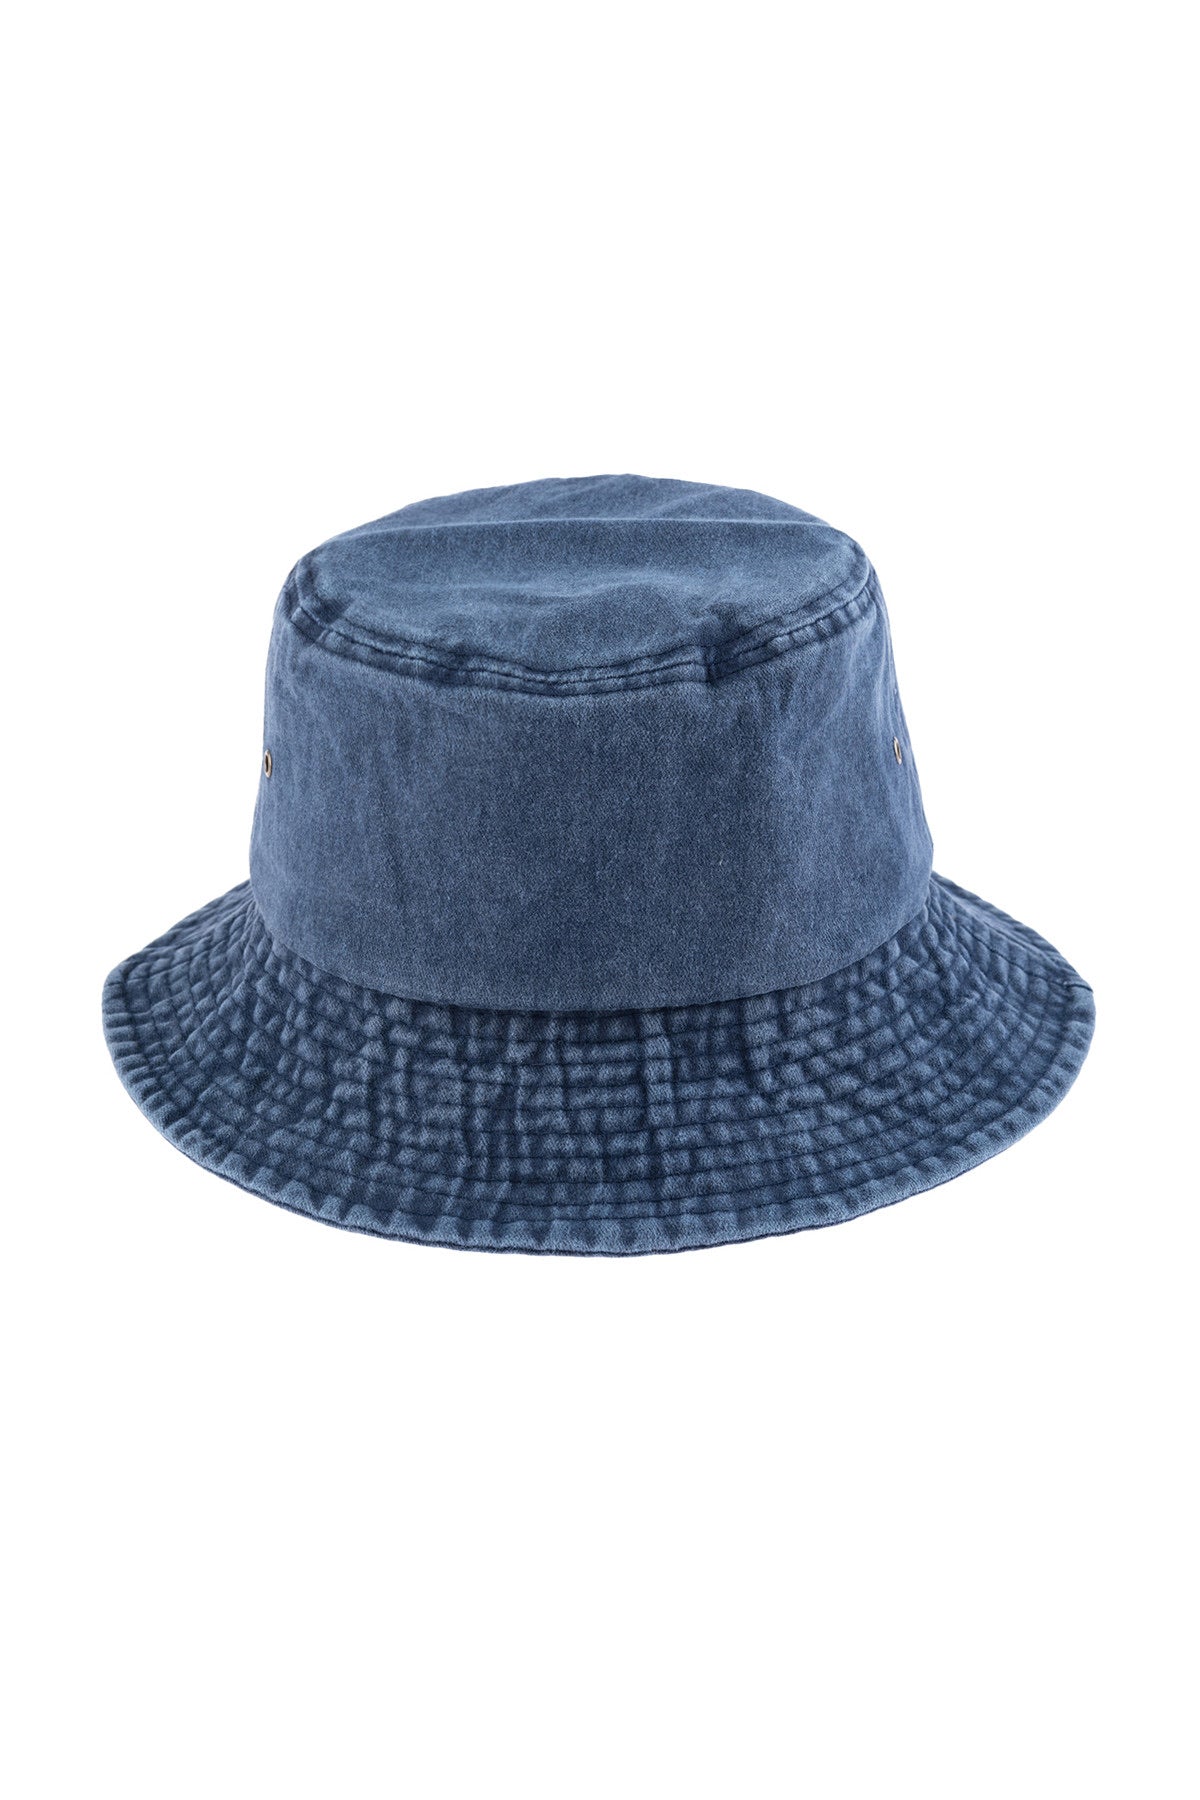 Blue acid wash summer hat